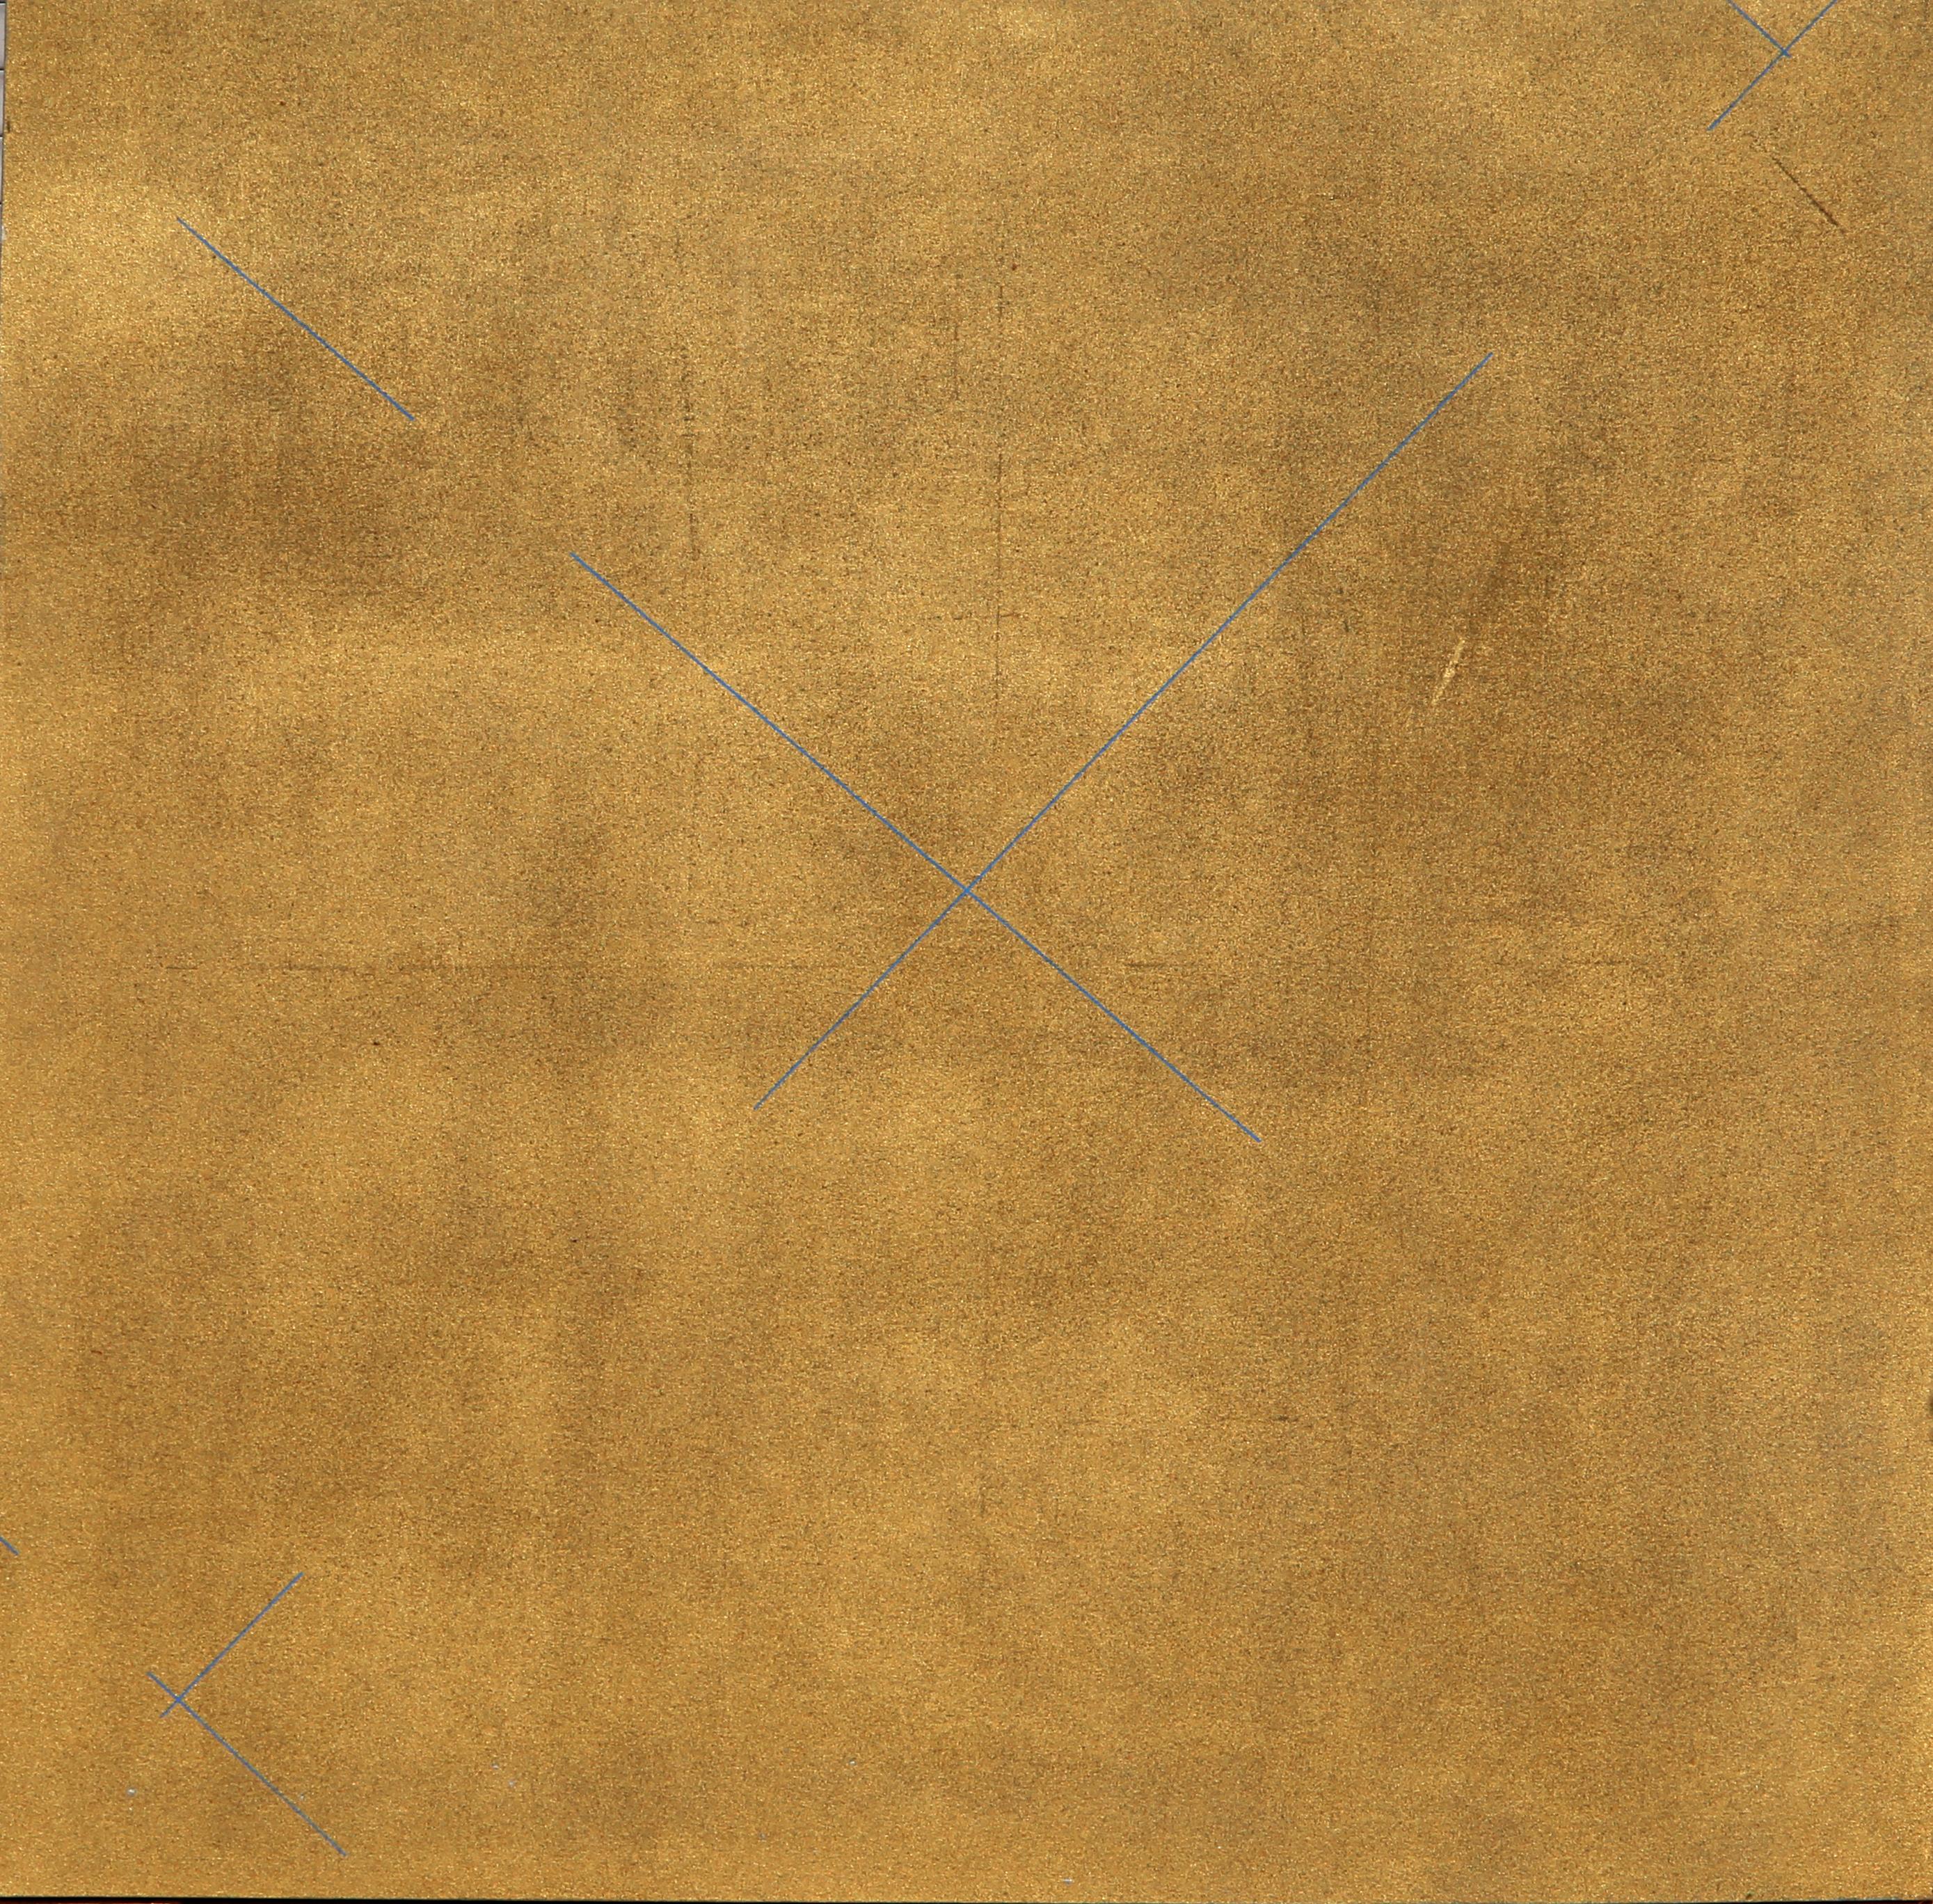 Künstler: Paul von Ringelheim, Österreicher/Amerikaner (1933 - 2003)
Titel: Ohne Titel - Gold Minimalist
Jahr: 1975
Medium: Öl auf Leinwand, verso signiert und datiert
Größe: 66,5 x 66,5 Zoll (168,91 x 168,91 cm)